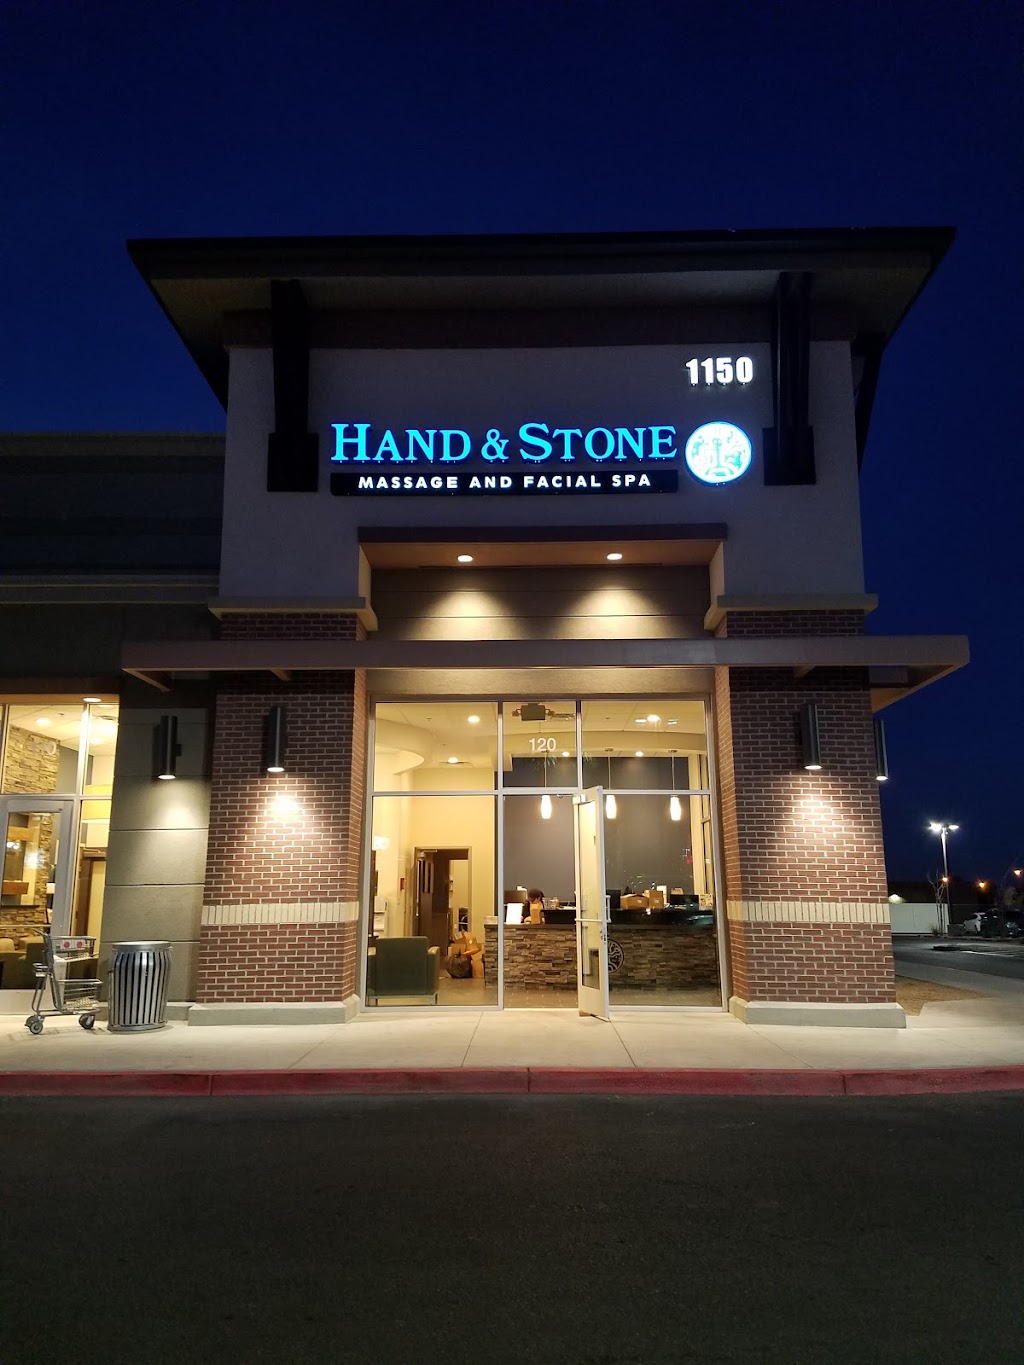 Hand & Stone Massage and Facial Spa | 1150 E Silverado Ranch Blvd, Las Vegas, NV 89183 | Phone: (702) 487-7233